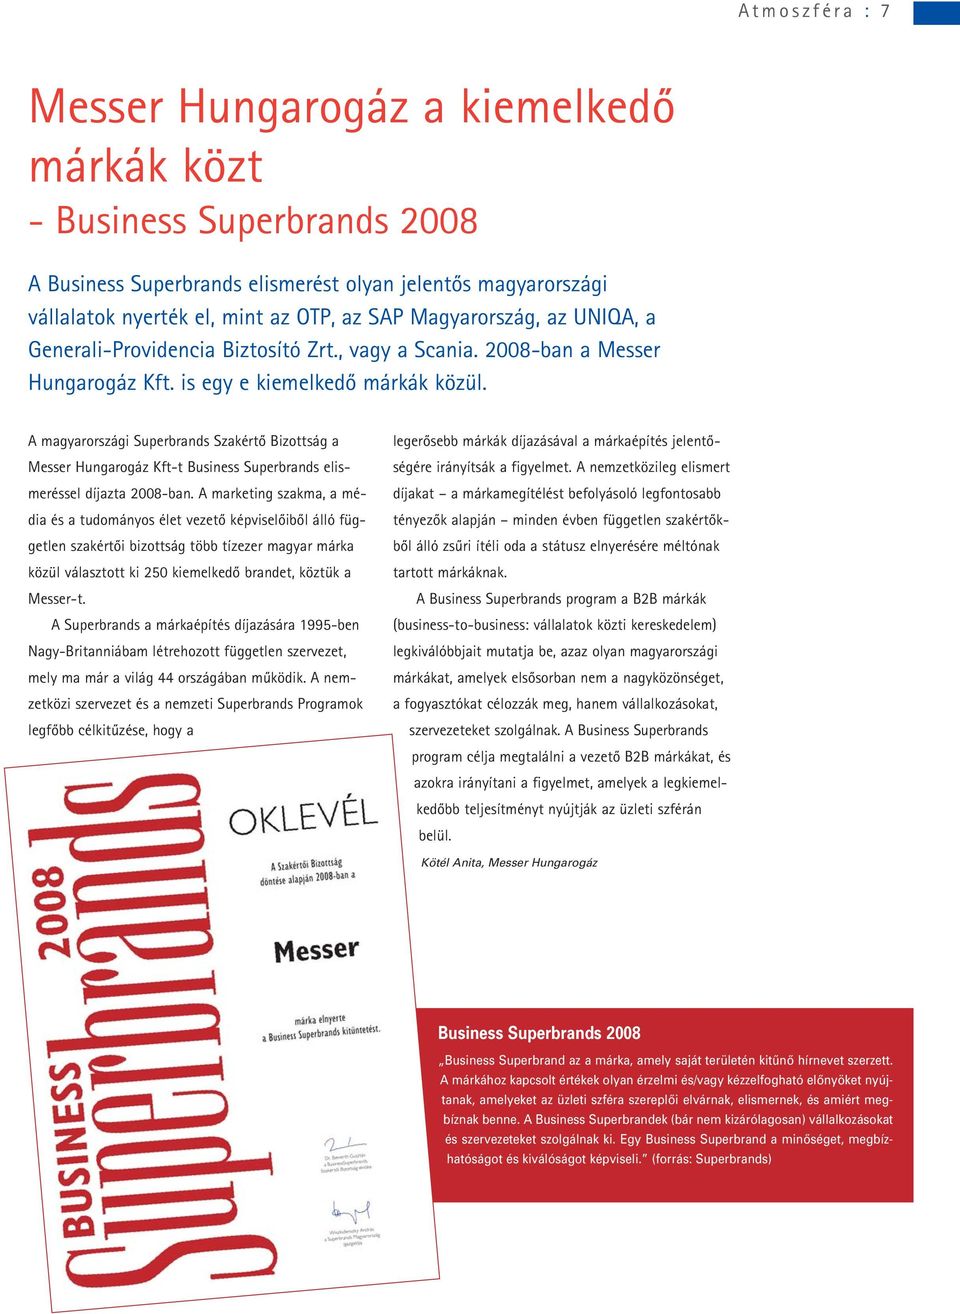 A magyarországi Superbrands Szakértô Bizottság a Messer Hungarogáz Kft-t Business Superbrands elismeréssel díjazta 2008-ban.